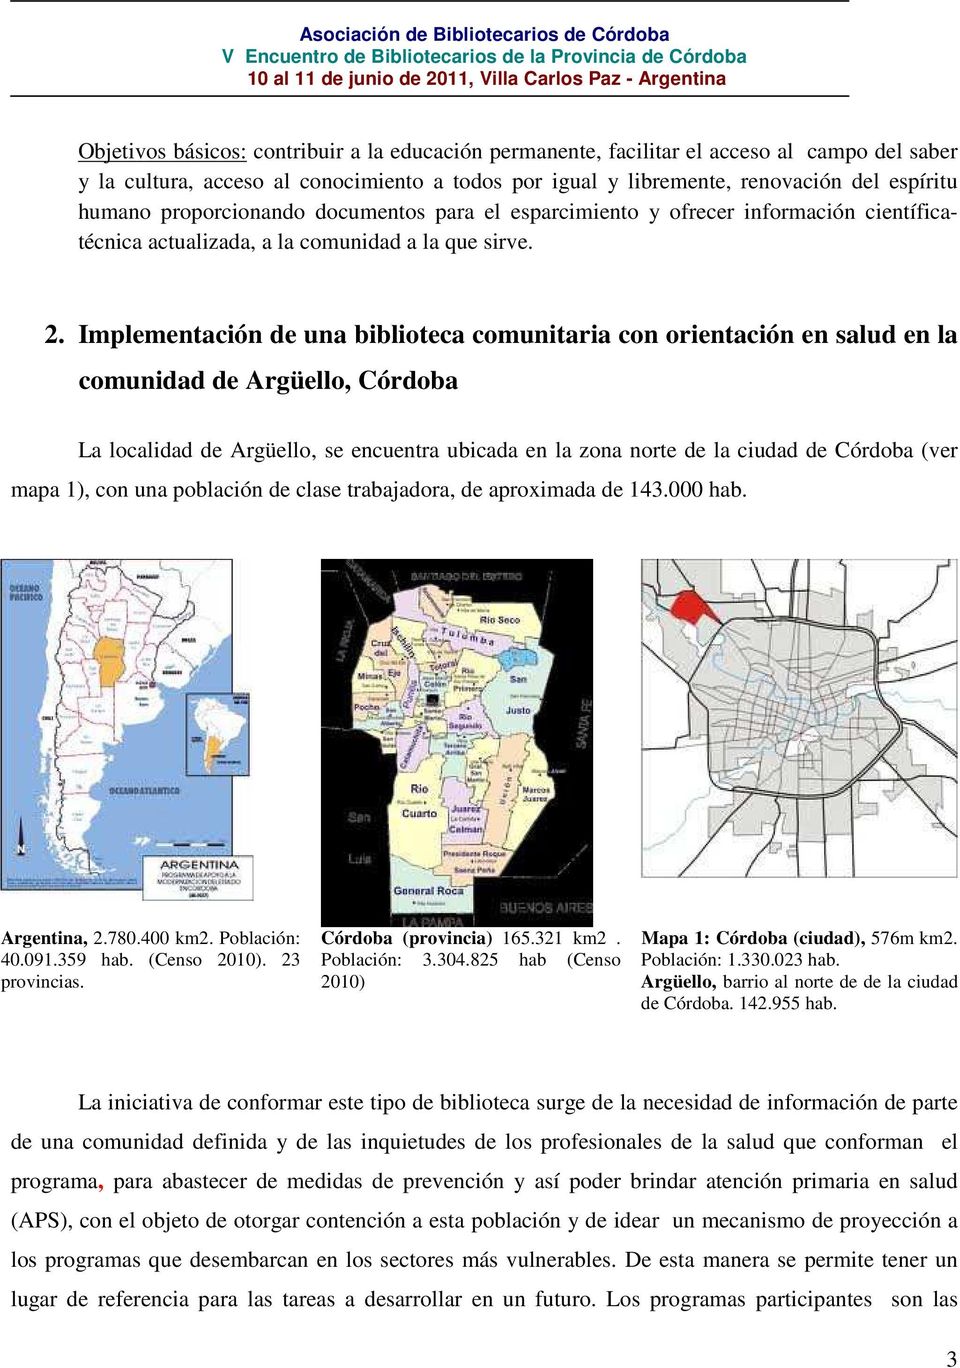 Implementación de una biblioteca comunitaria con orientación en salud en la comunidad de Argüello, Córdoba La localidad de Argüello, se encuentra ubicada en la zona norte de la ciudad de Córdoba (ver